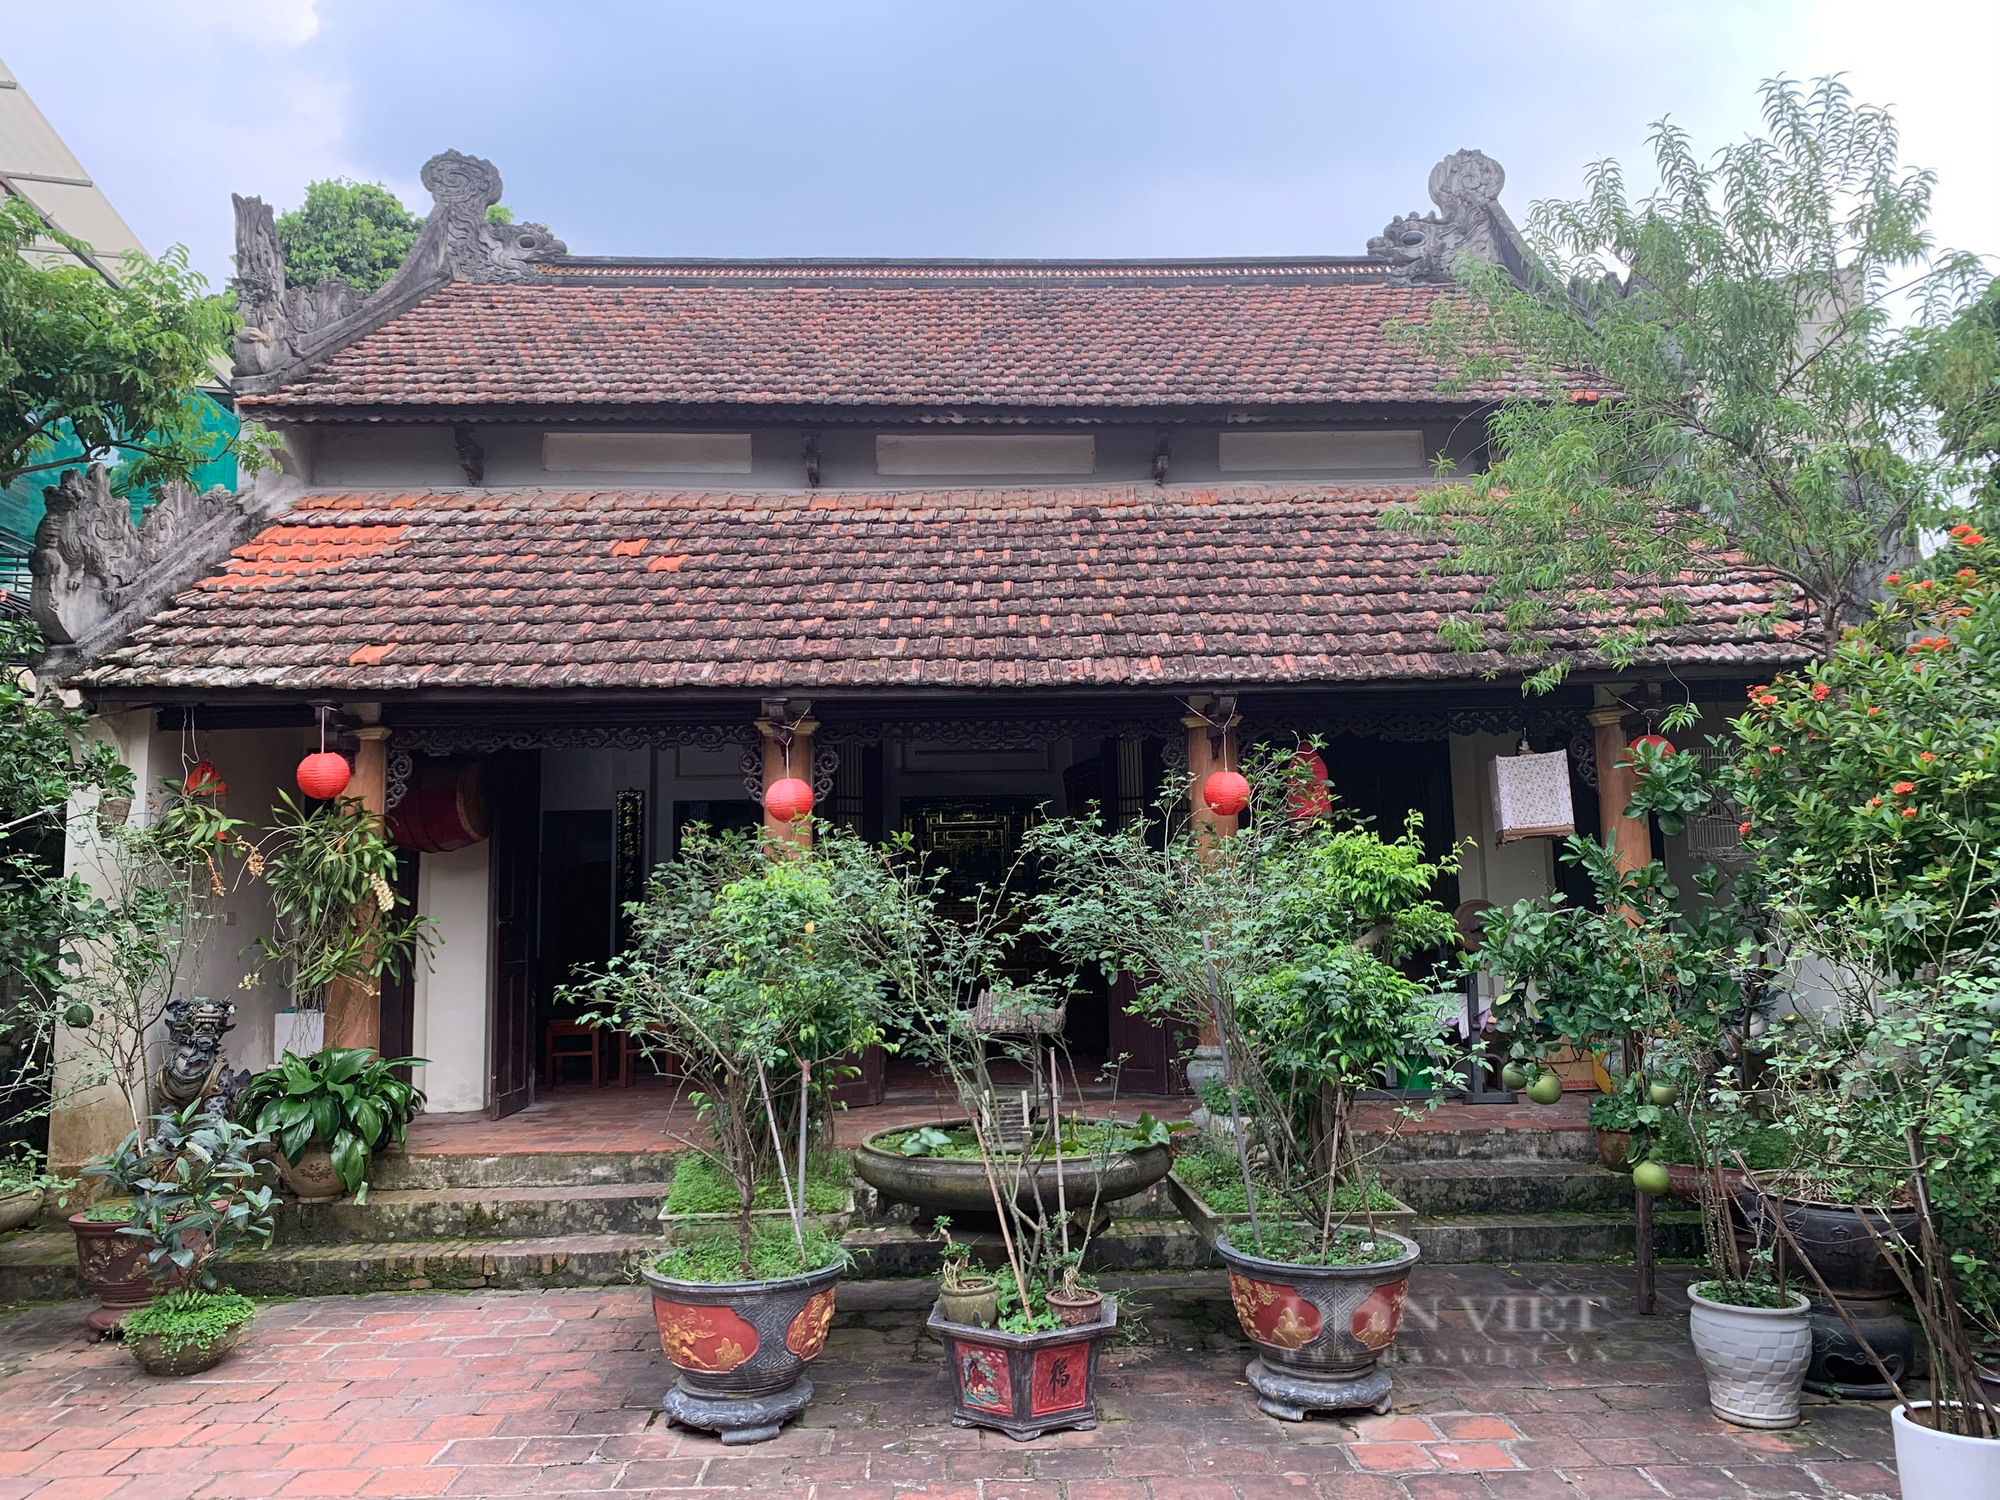 Chiêm ngưỡng nhà cổ 200 năm tuổi xuất hiện trong hàng loạt bộ phim truyền hình Việt Nam - Ảnh 5.